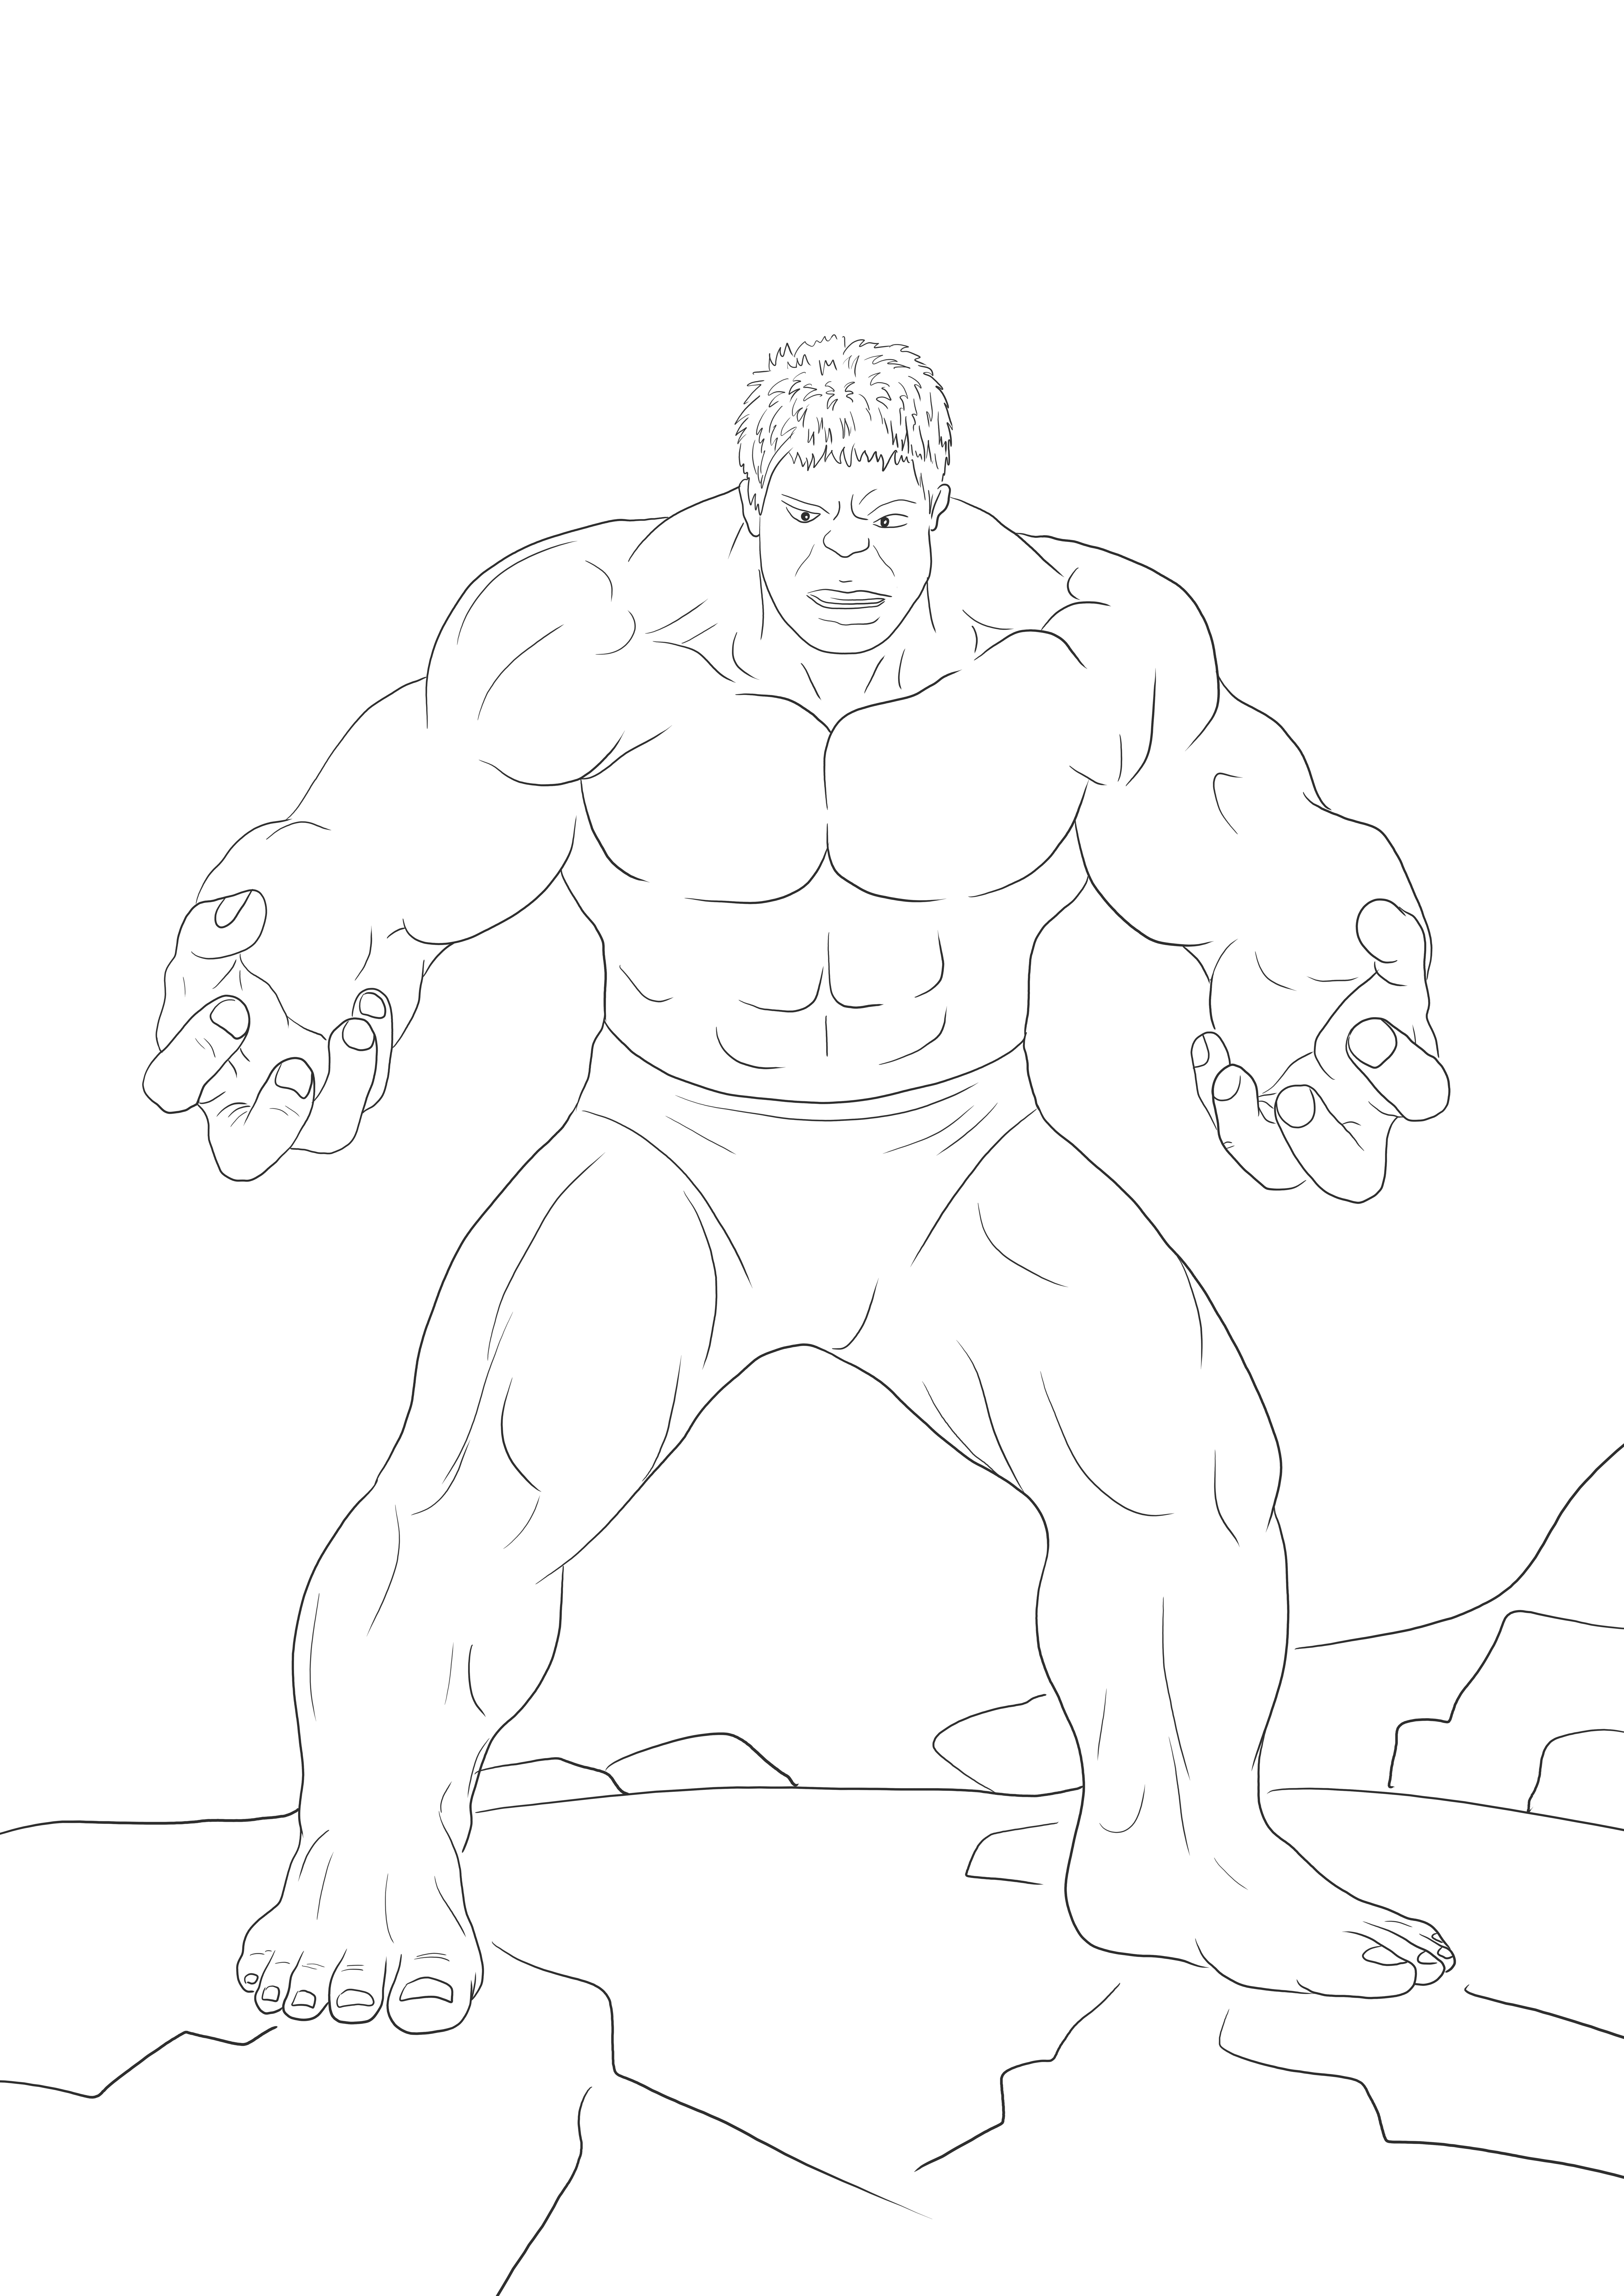 Imprimable gratuit de Hulk en colère à colorier pour enseigner les héros Marvel